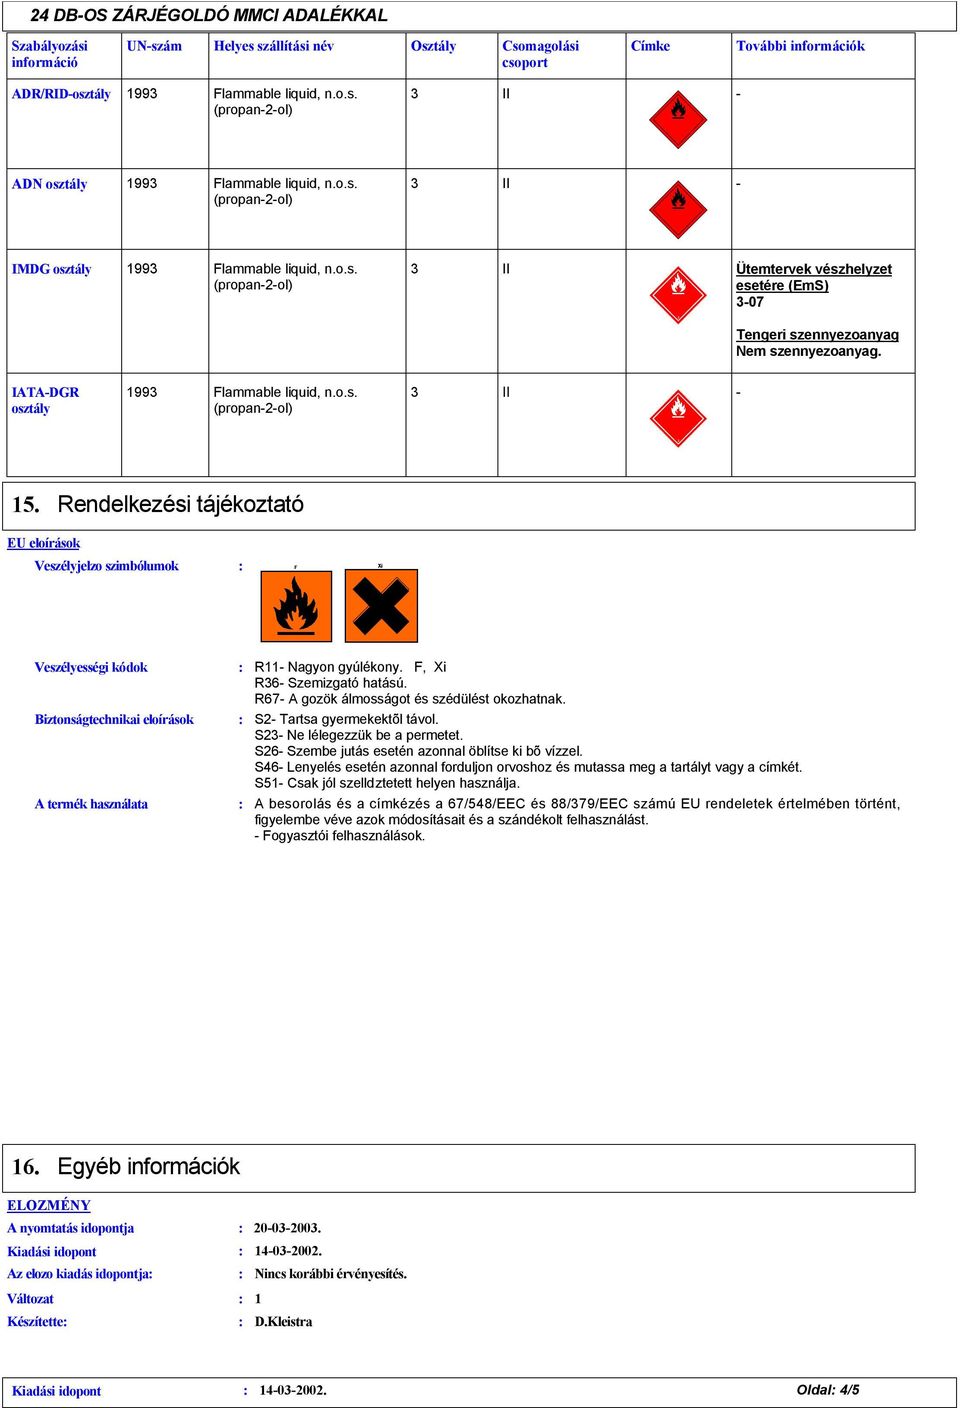 Rendelkezési tájékoztató EU eloírások Veszélyjelzo szimbólumok Veszélyességi kódok Biztonságtechnikai eloírások A termék használata R11 Nagyon gyúlékony. F, Xi R6 Szemizgató hatású.